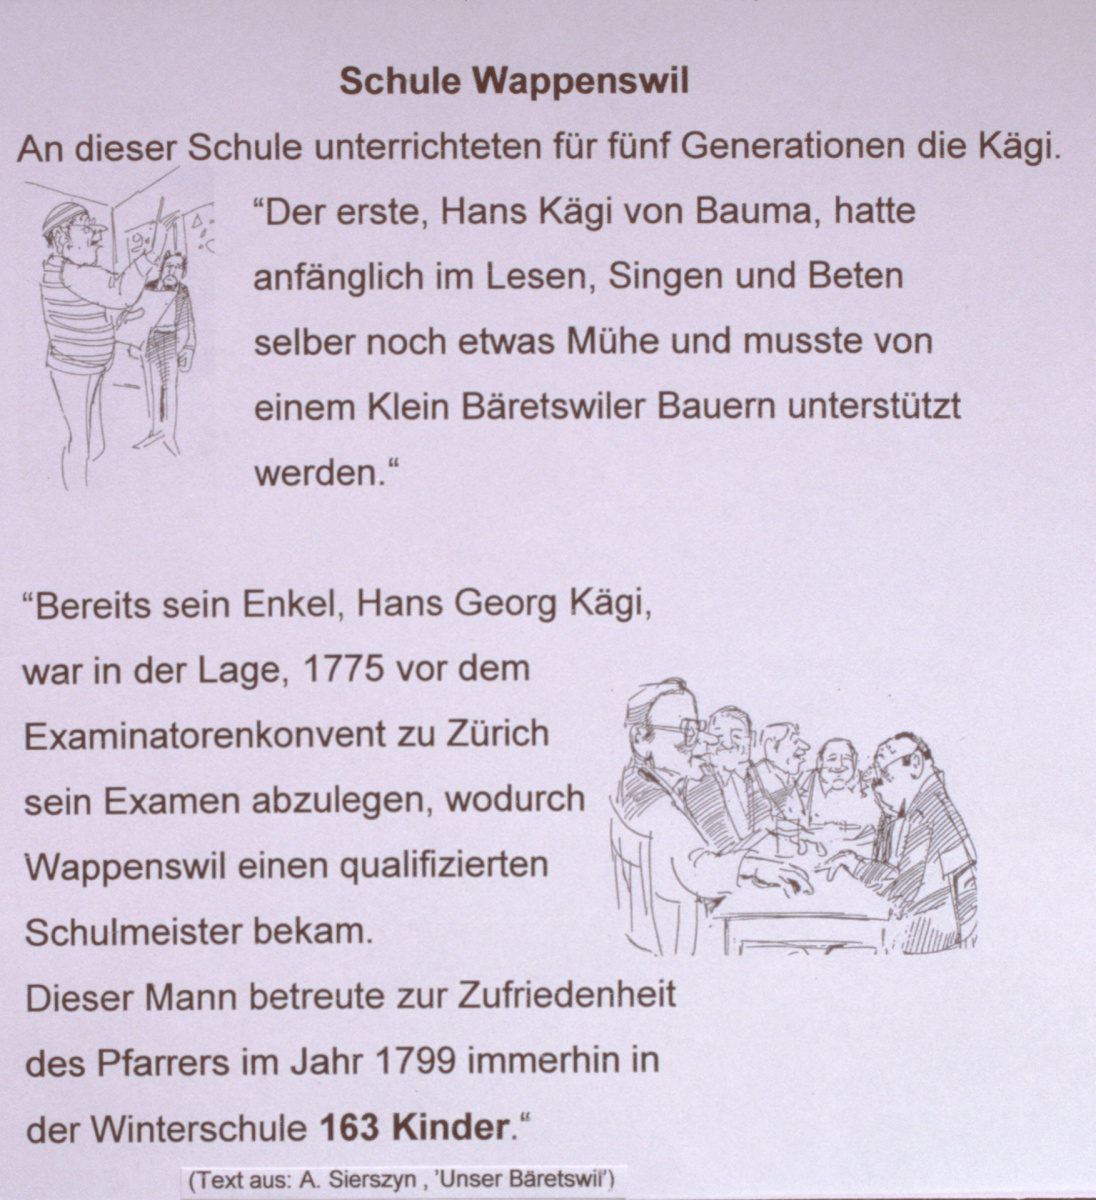 Schule Wappenswil, Besonderes 5 Generationen Kägi